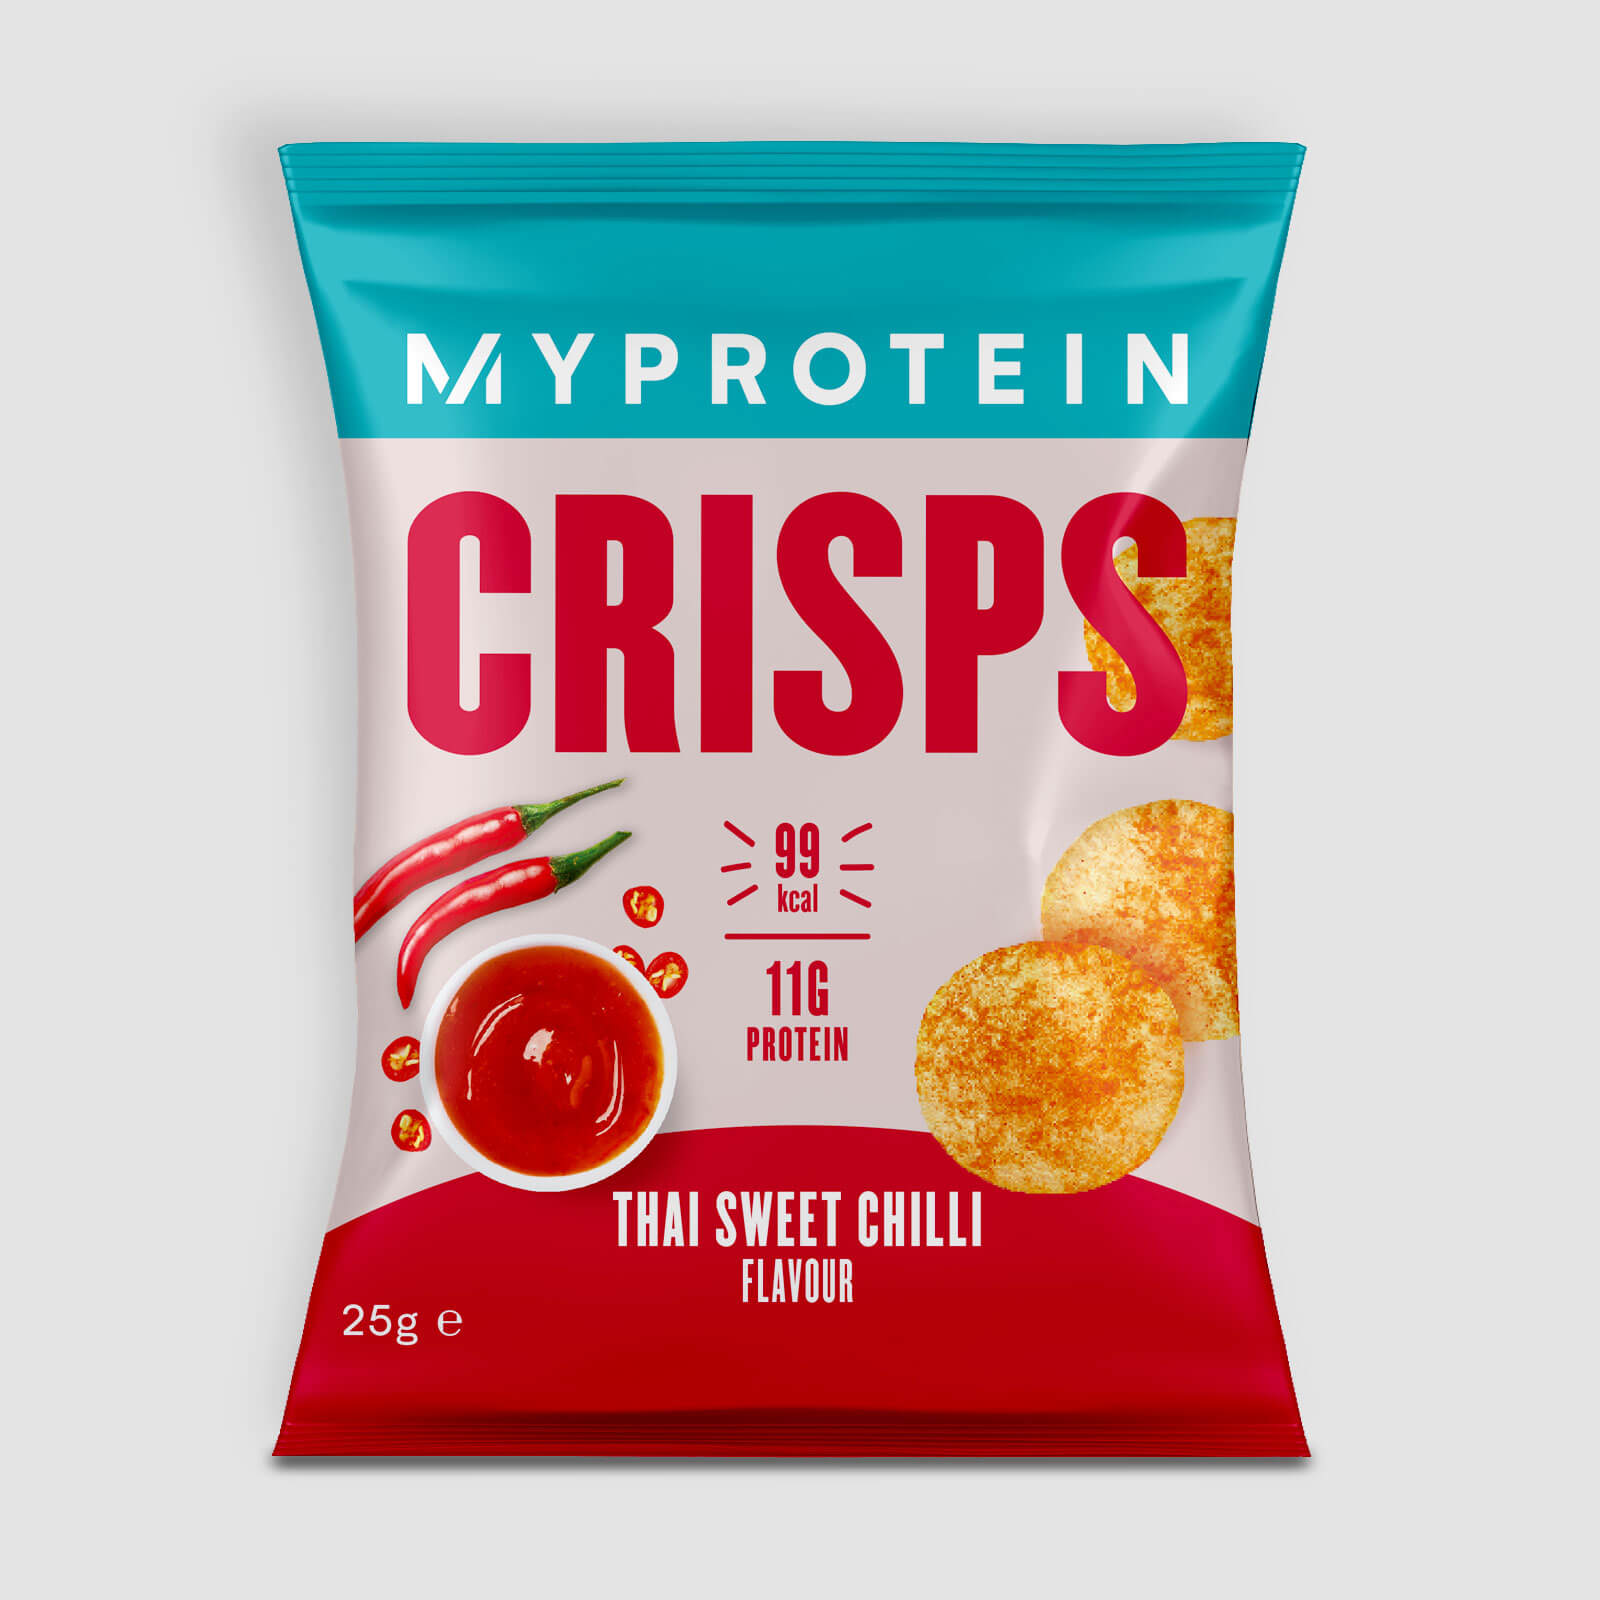 Myprotein Protein Crisps - 6 x 25g - Thai Sweet Chilli